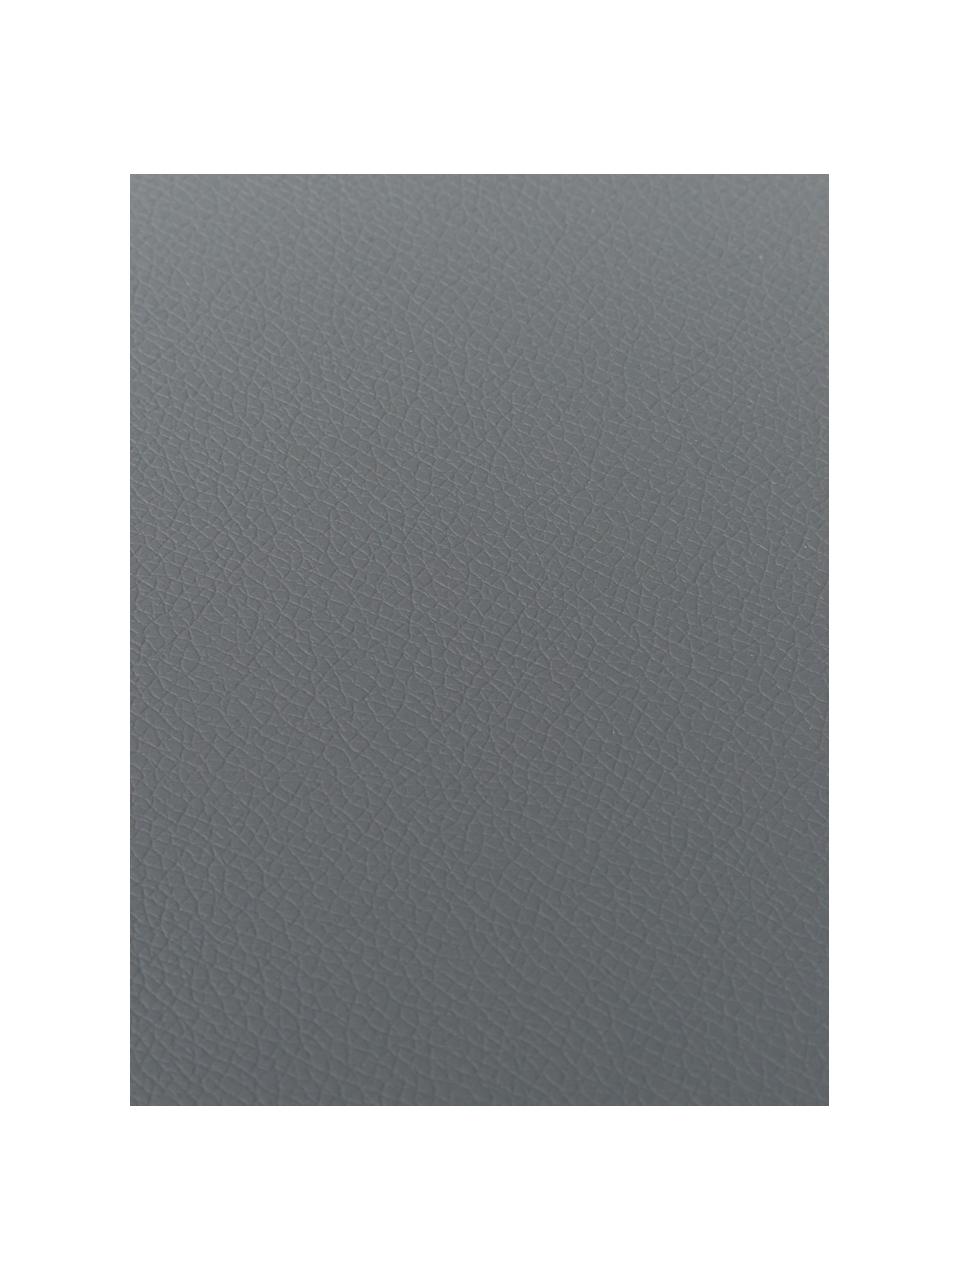 Kulaté prostírání z imitace kůže Pik, 2 ks, Imitace kůže (PVC), Tmavě šedá, Ø 38 cm